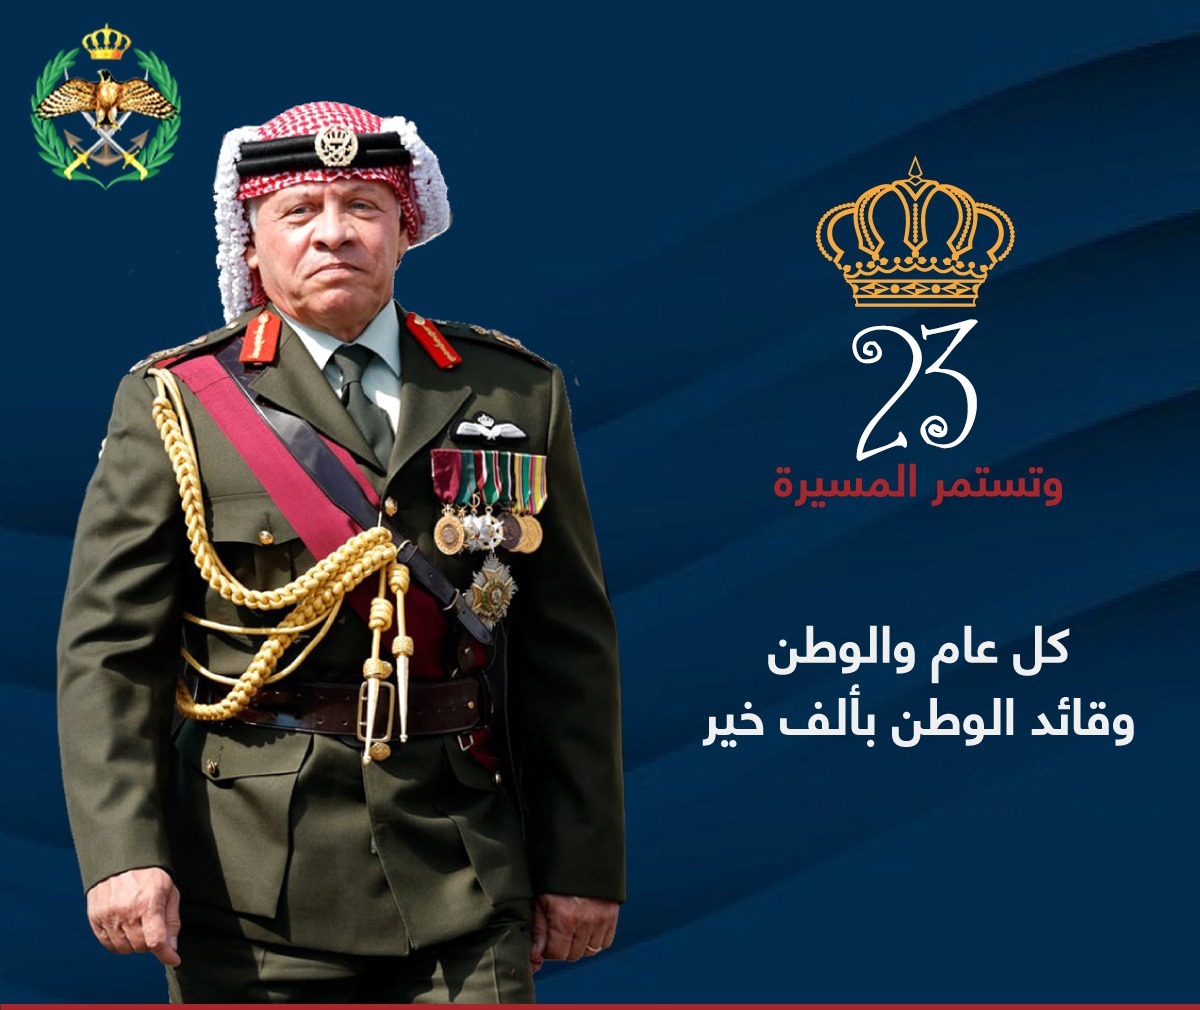 رئيس الجامعة الأردنية العقبة يهنئ القائد بعيد الجلوس الملكي